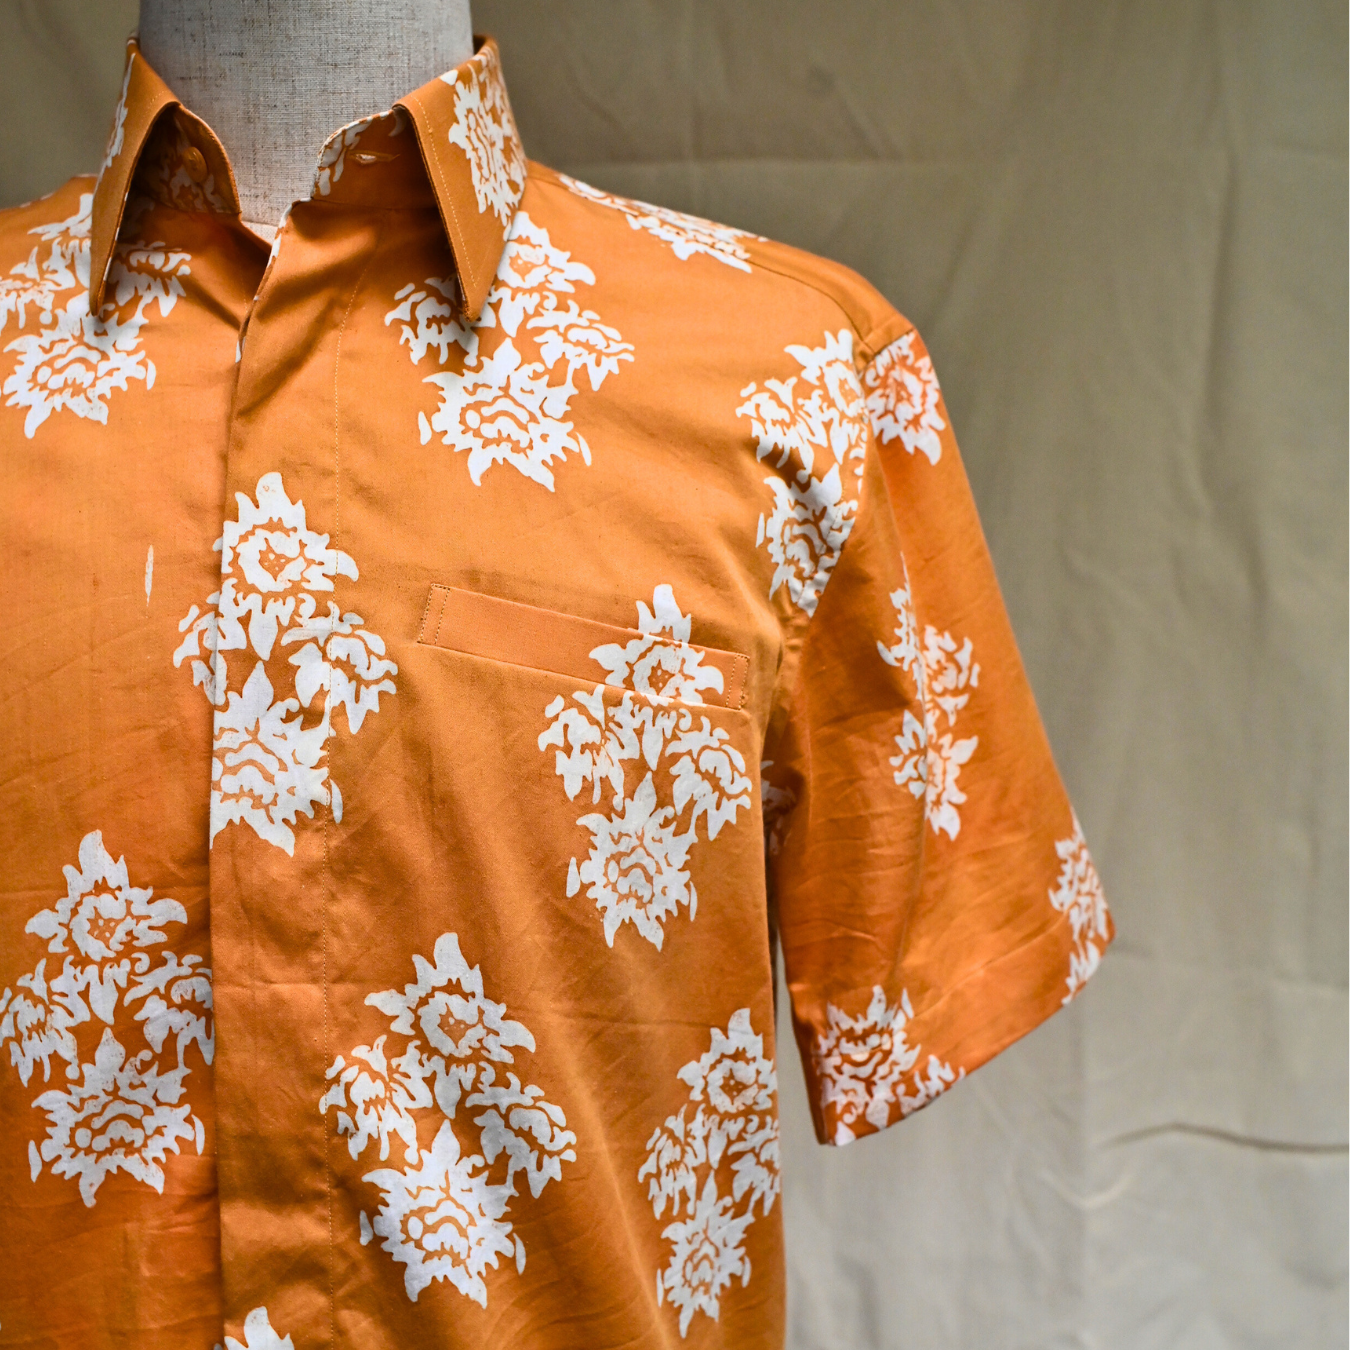 Tangerine - Men's Bespoke Shirt